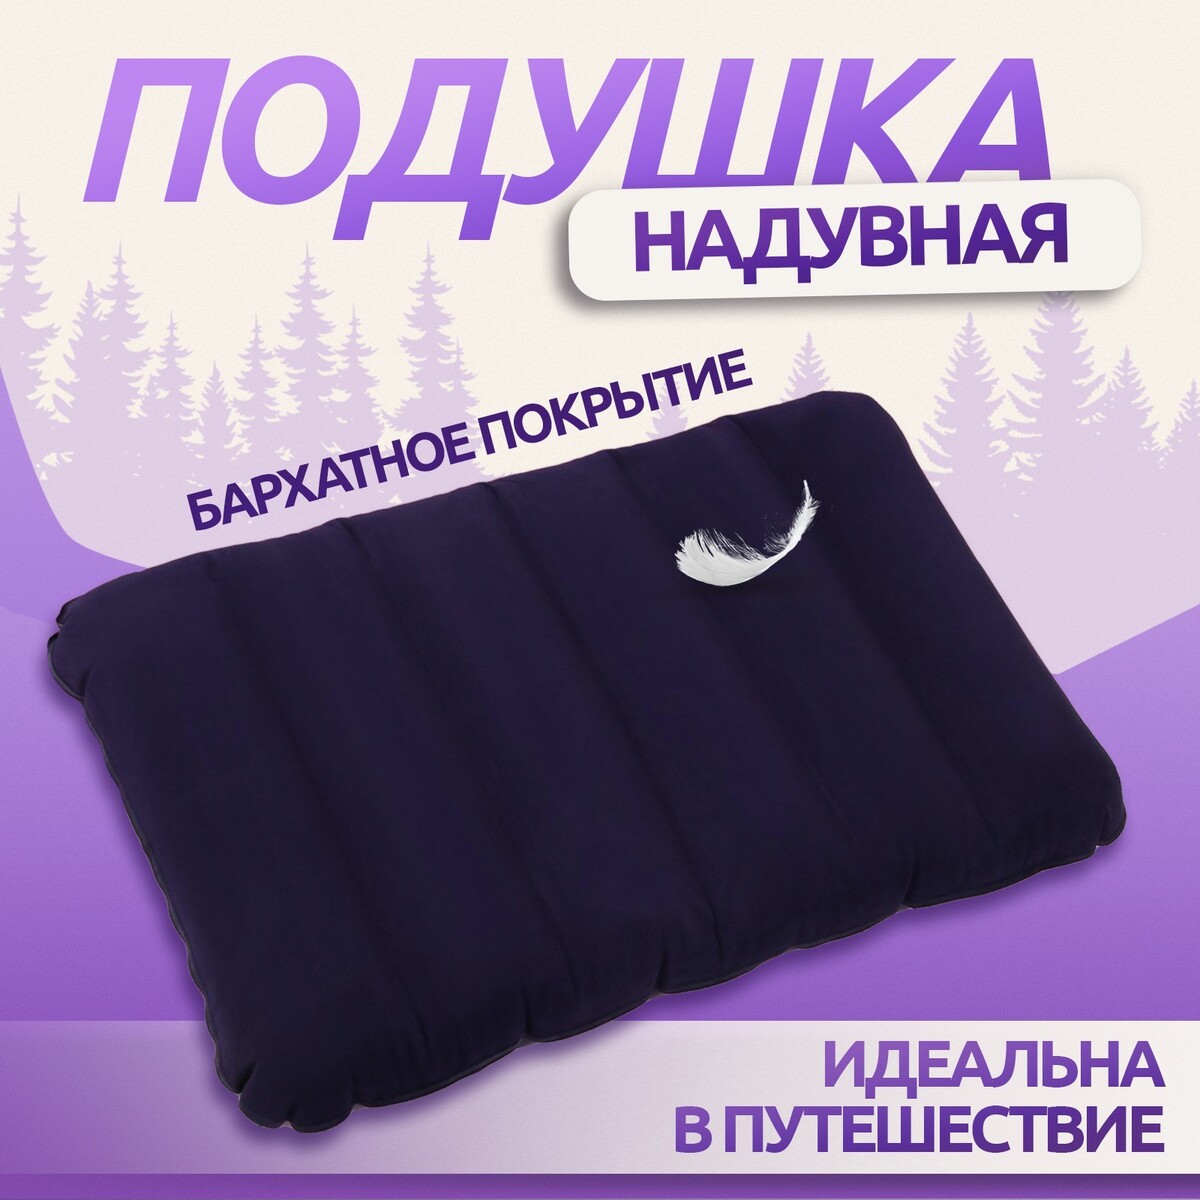 Подушка дорожная, надувная, 46 × 30 × 7,5 см, цвет синий подушка для шеи дорожная надувная 42 × 27 см серый